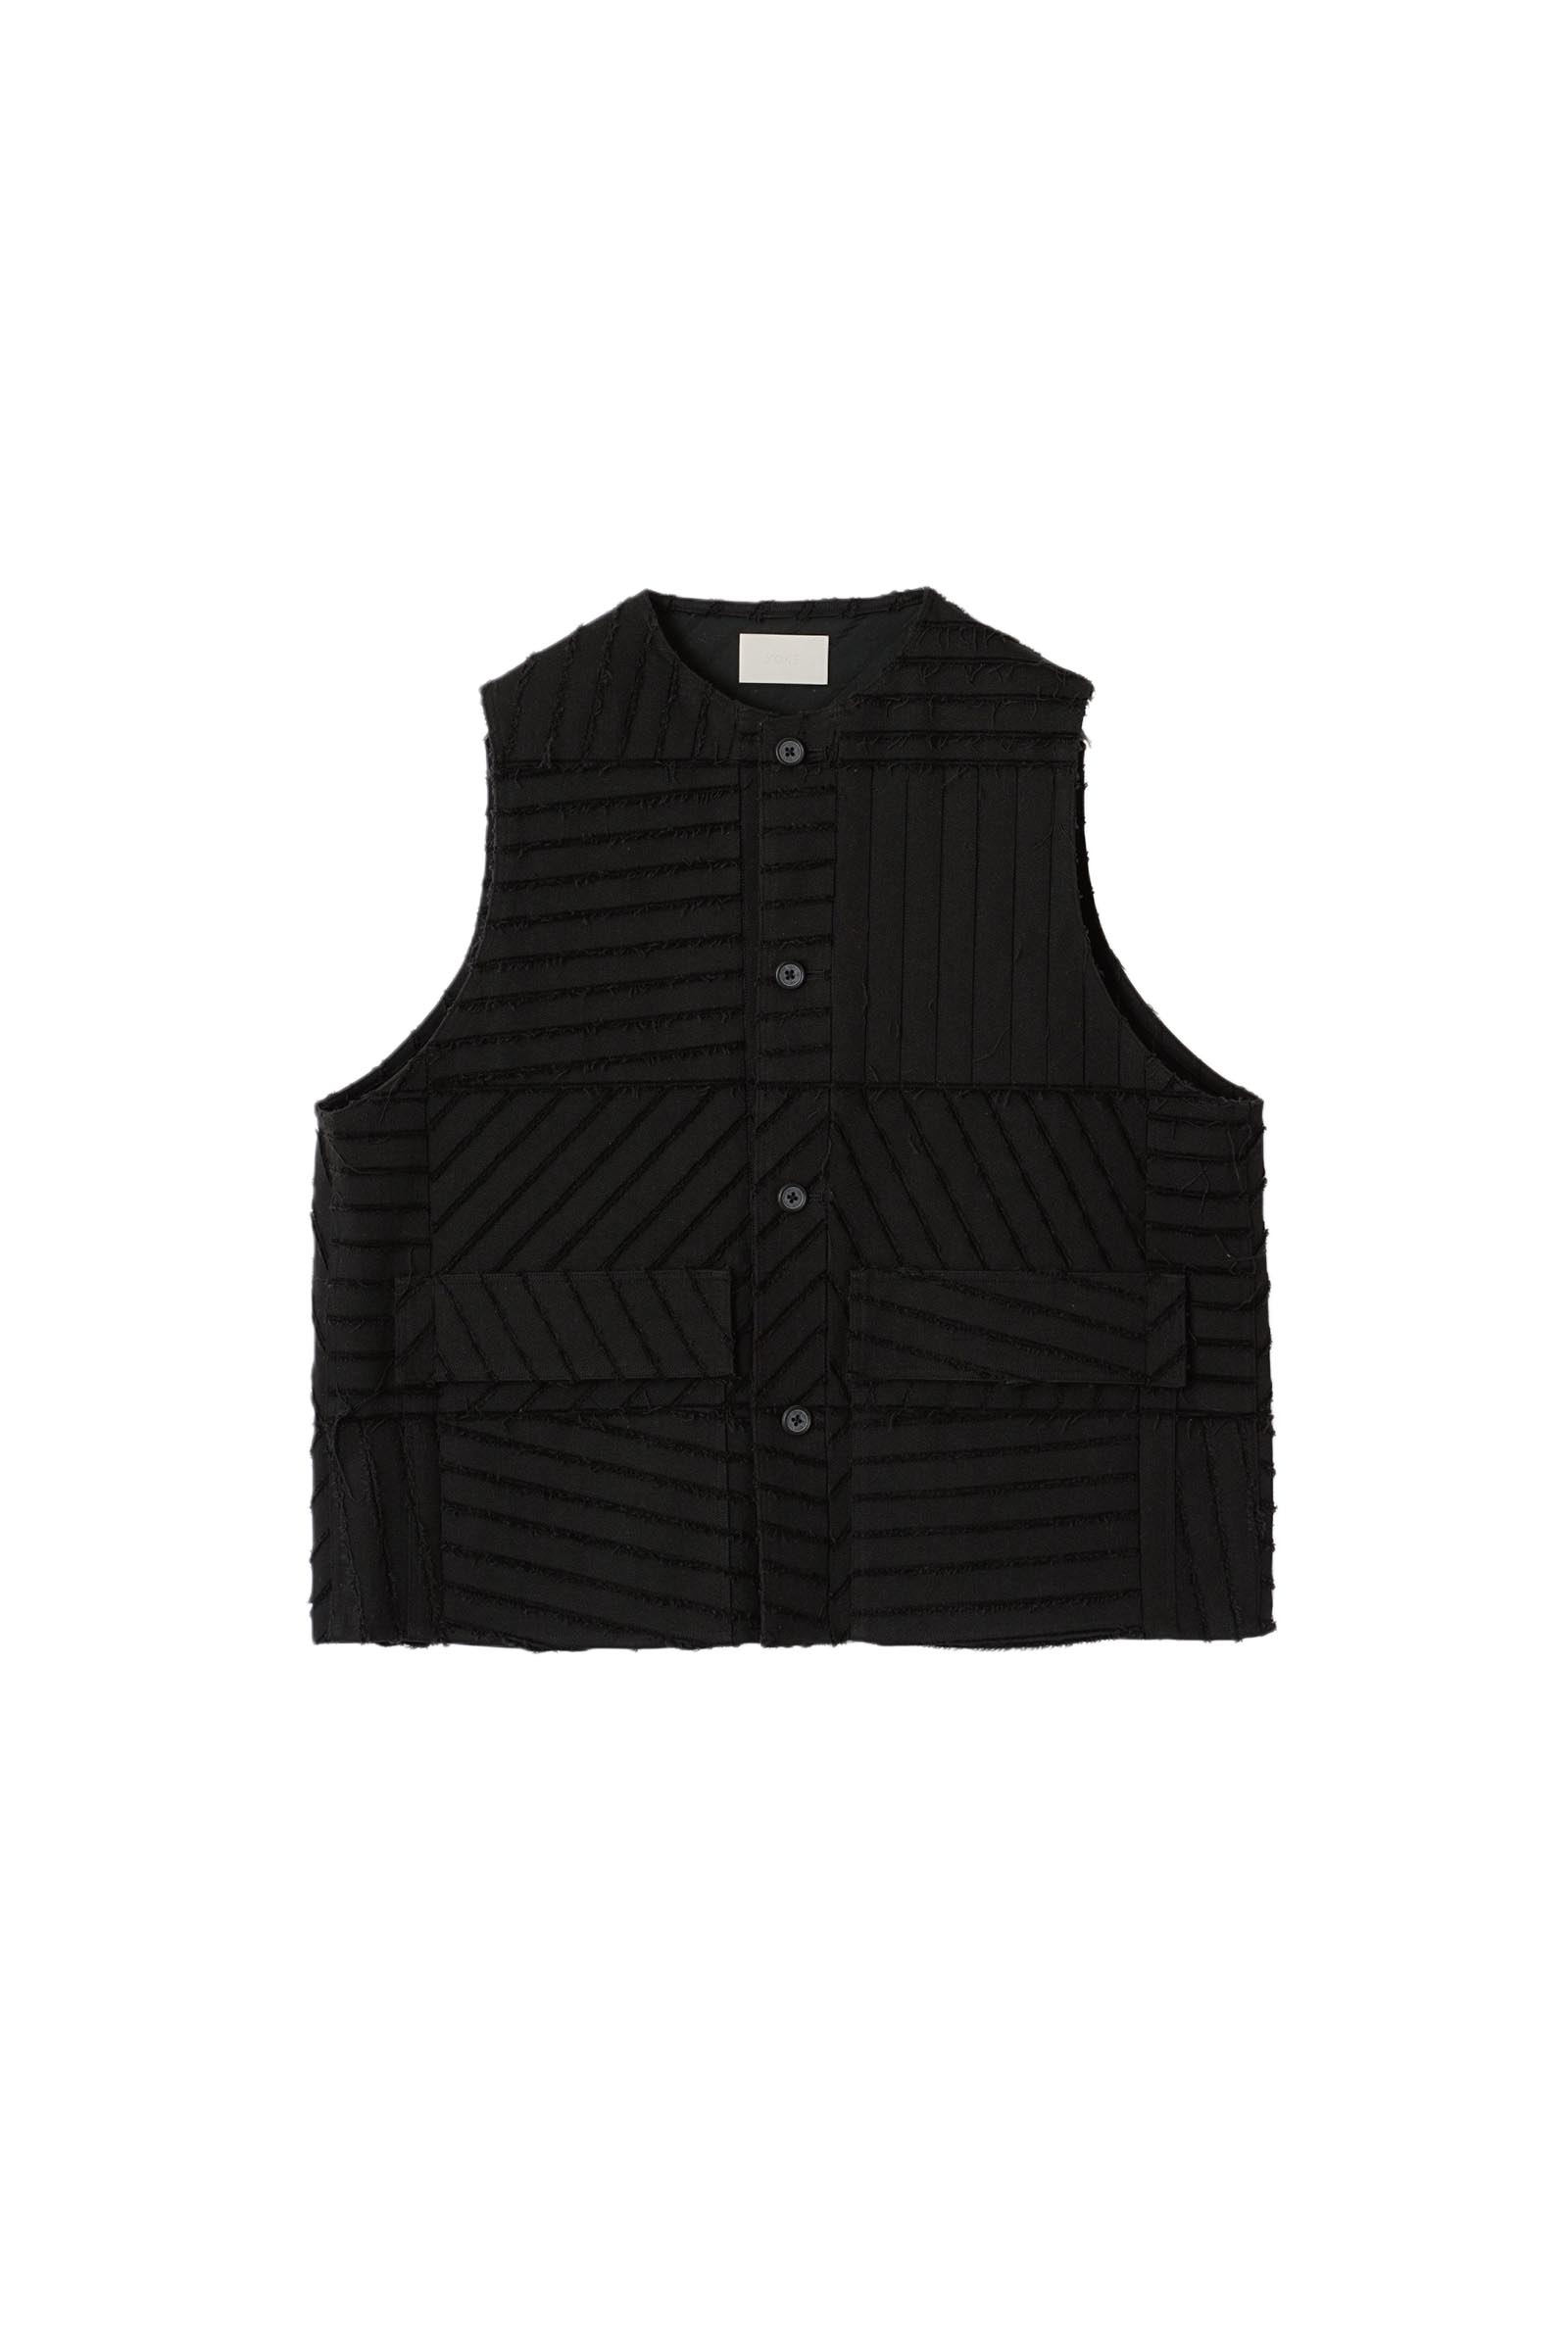 「RUMCHE」Knit Bonding Vest / blackCONT